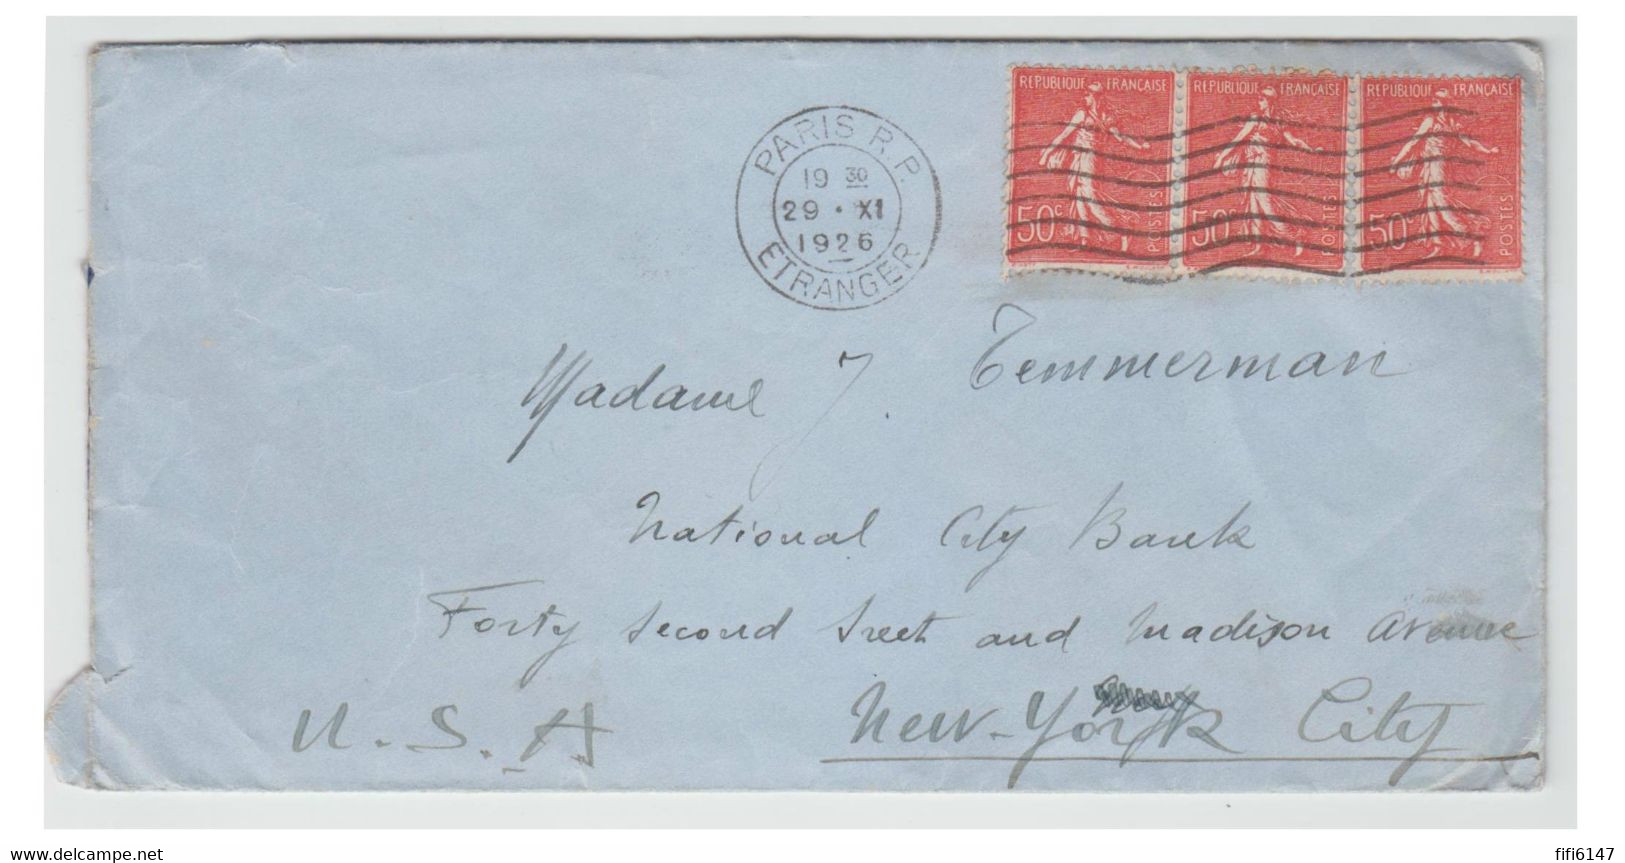 FRANCE --lettre De PARIS Pour NEW-YORK -- Lac -- Tà D " PARIS R.P. ETRANGER -29 XI 1926" --Pas De Marque à L'arrivée. - 1903-60 Semeuse Lignée